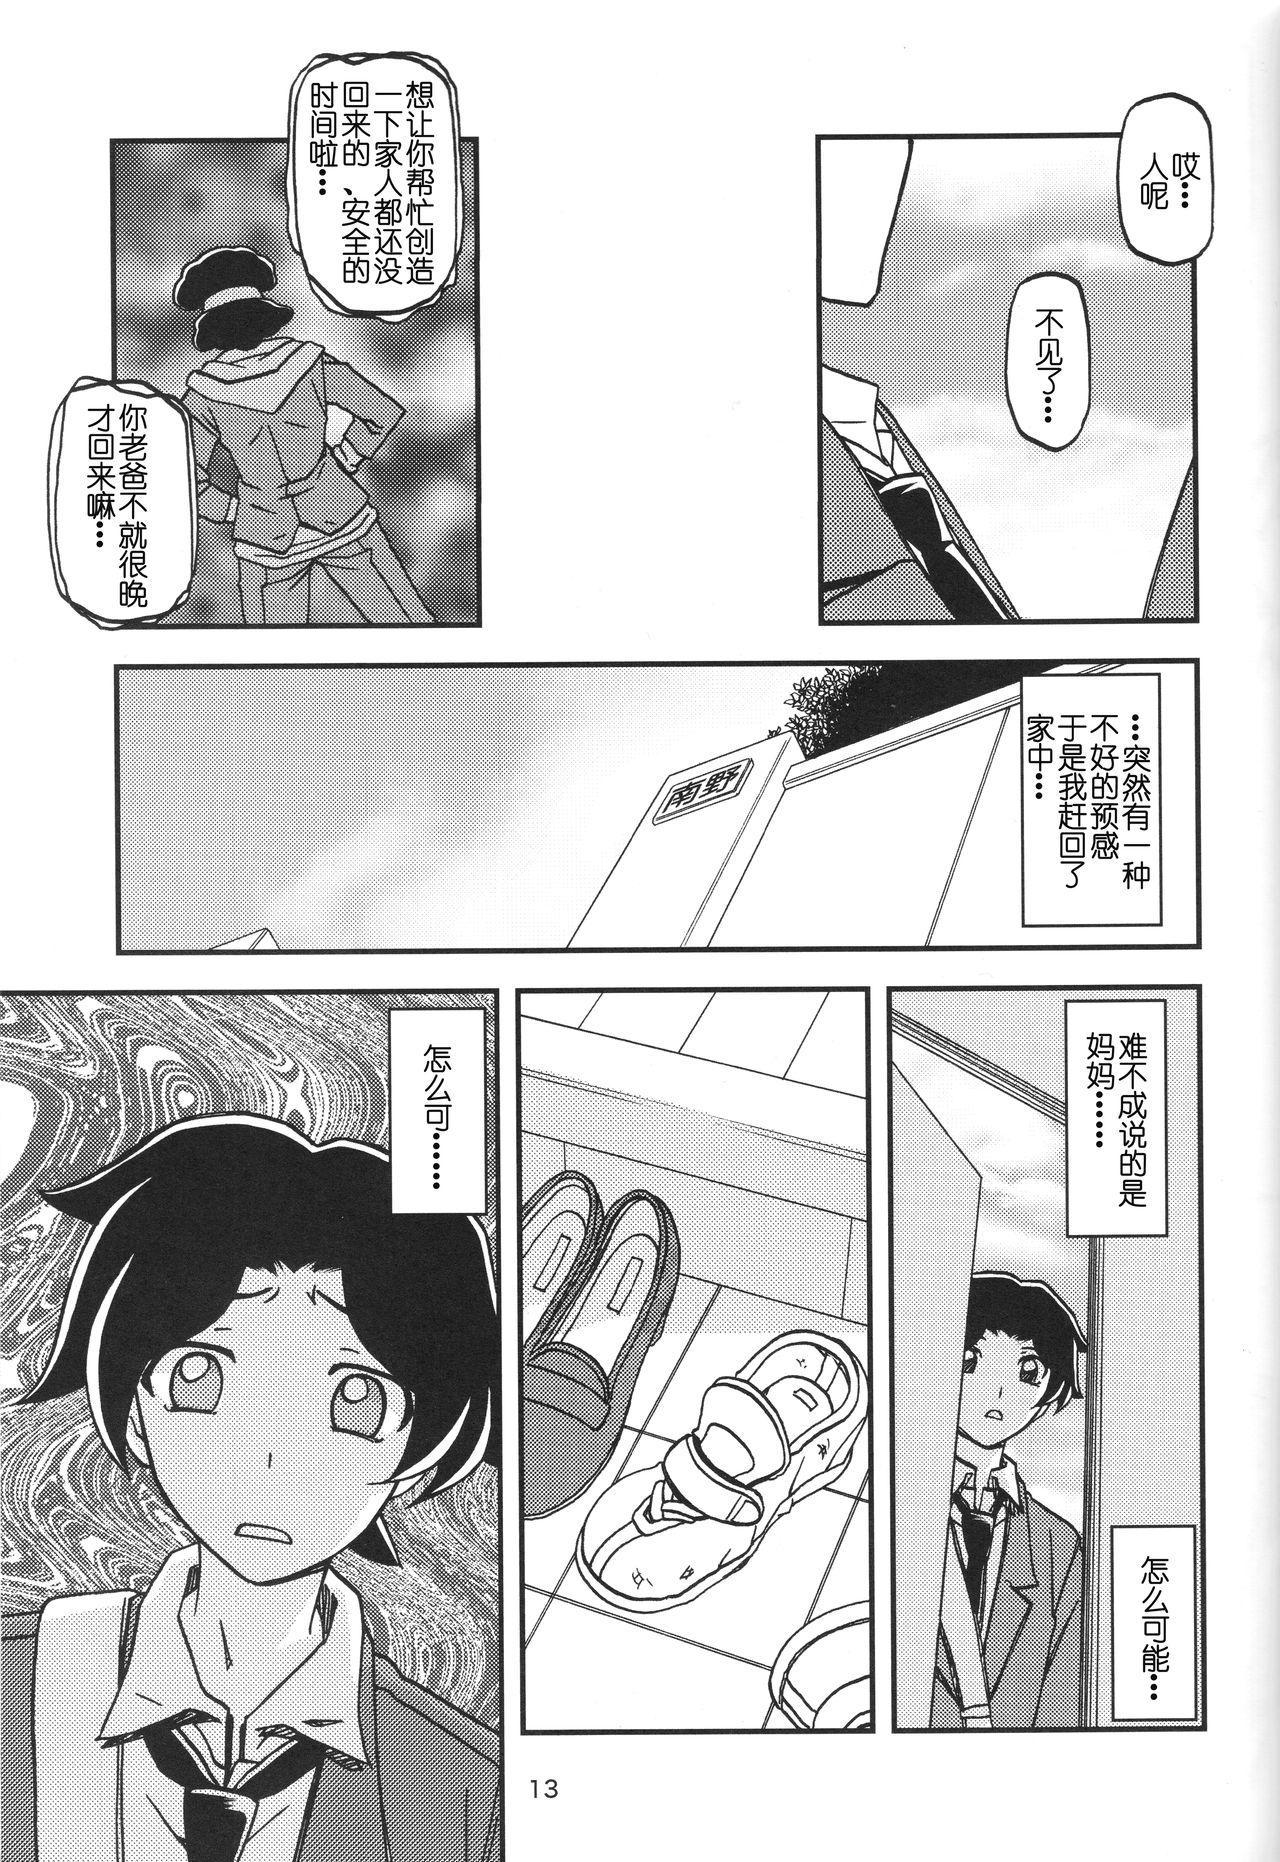 Cojiendo Akebi no Mi - Misora - Akebi no mi Fingers - Page 12